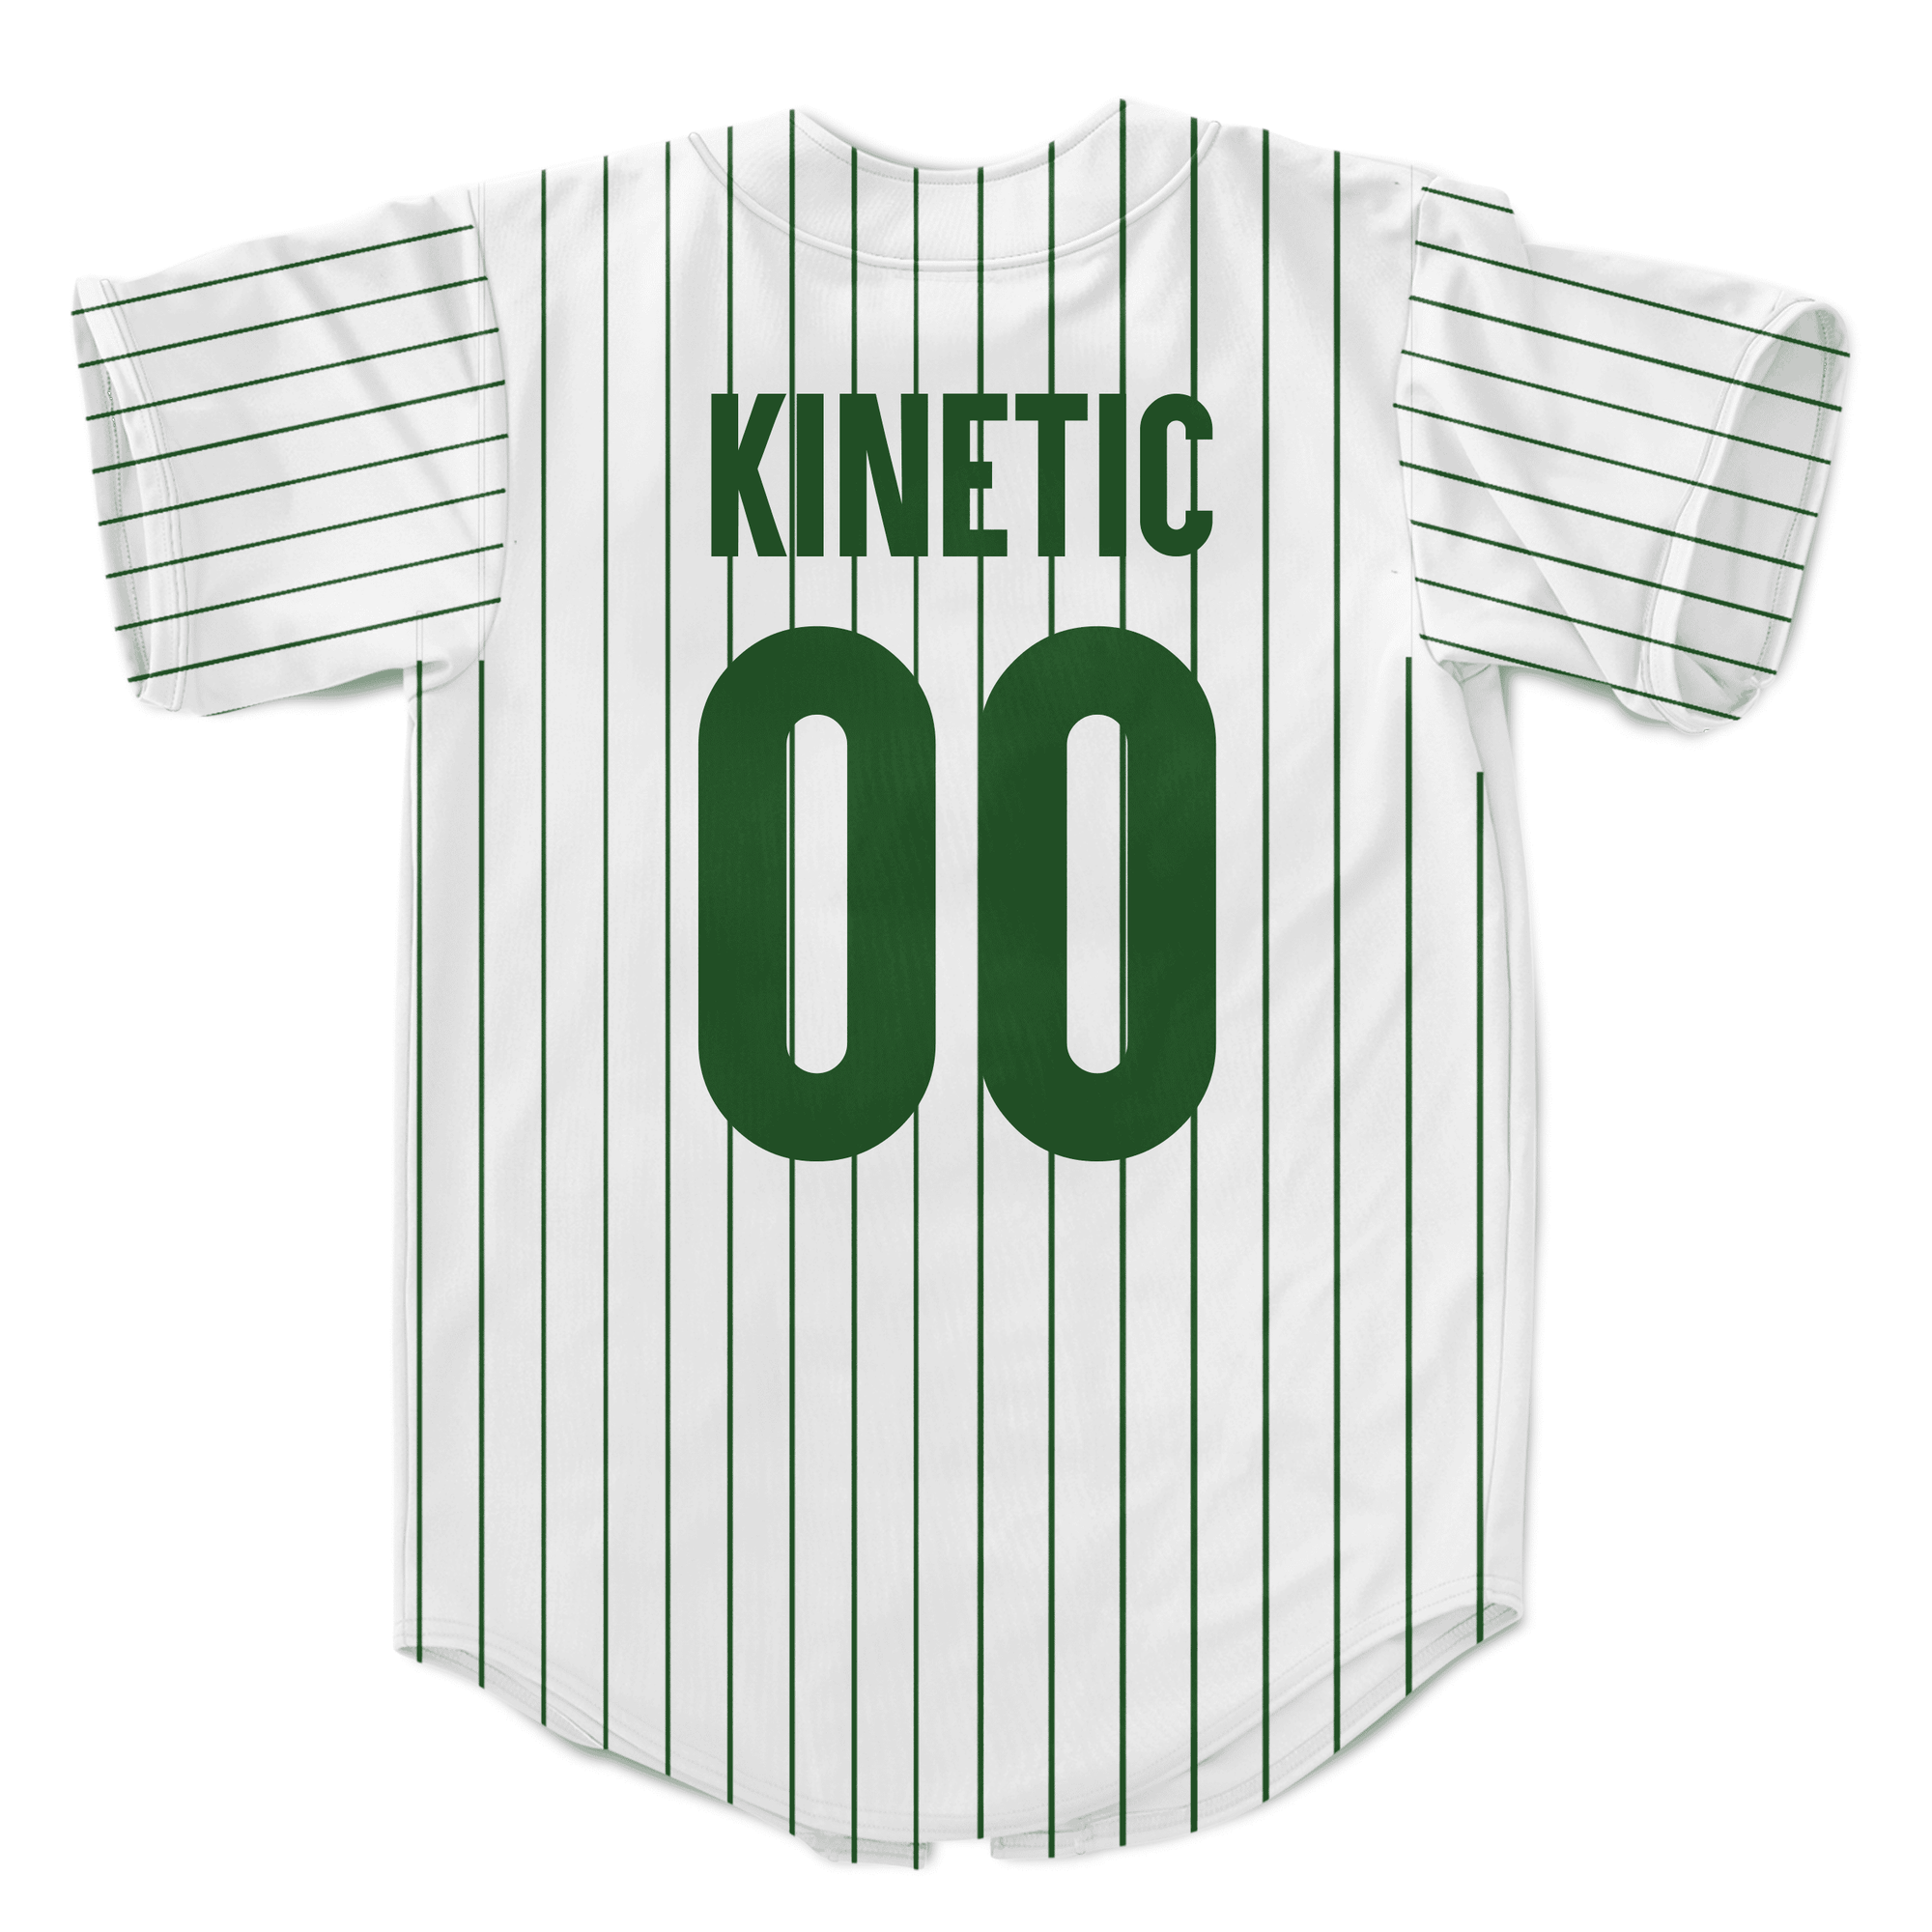 Sigma Chi - Green Pinstripe Baseball Jersey